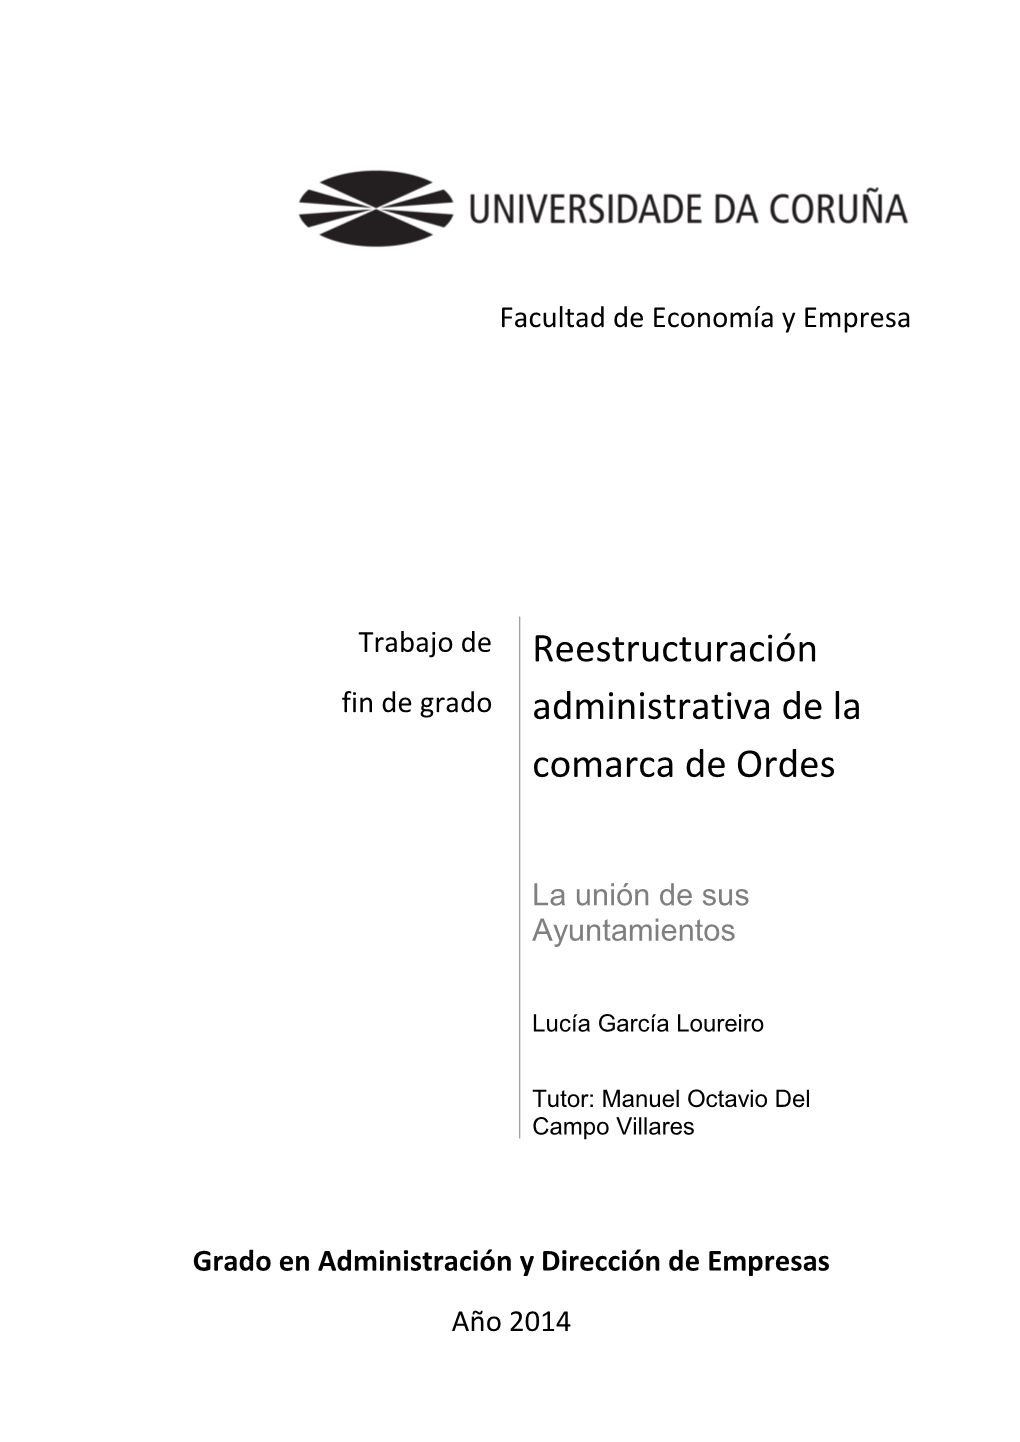 Reestructuración Administrativa De La Comarca De Ordes: La Unión De Sus Ayuntamientos